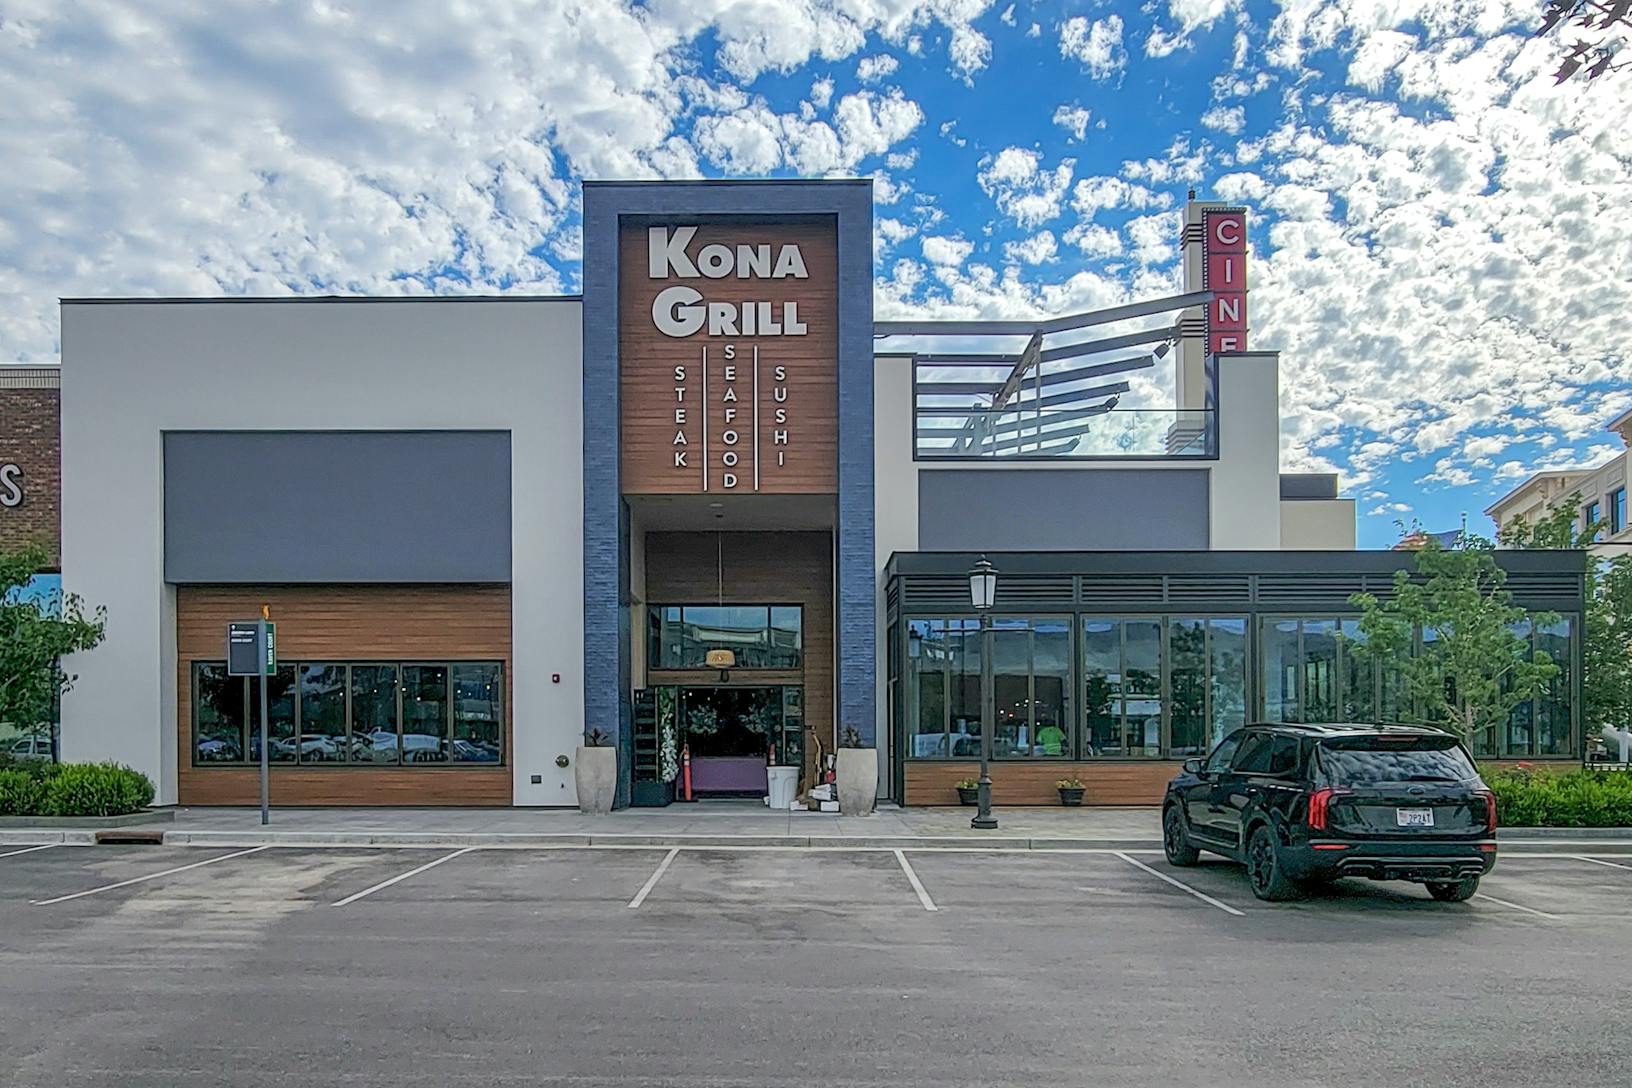 Kona Grill - Restaurant exterior 